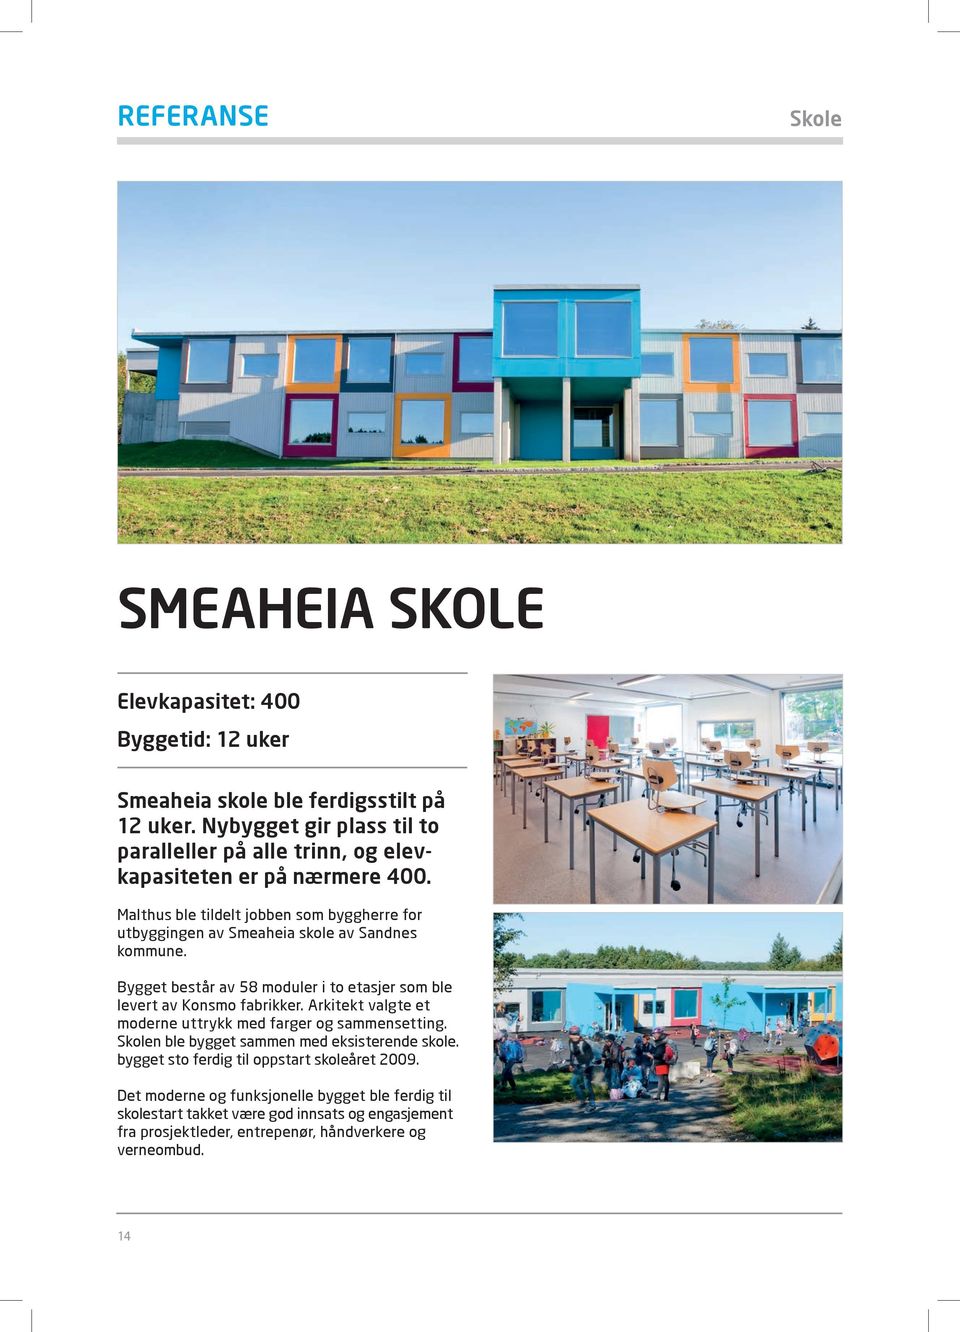 Malthus ble tildelt jobben som byggherre for utbyggingen av Smeaheia skole av Sandnes kommune. Bygget består av 58 moduler i to etasjer som ble levert av Konsmo fabrikker.